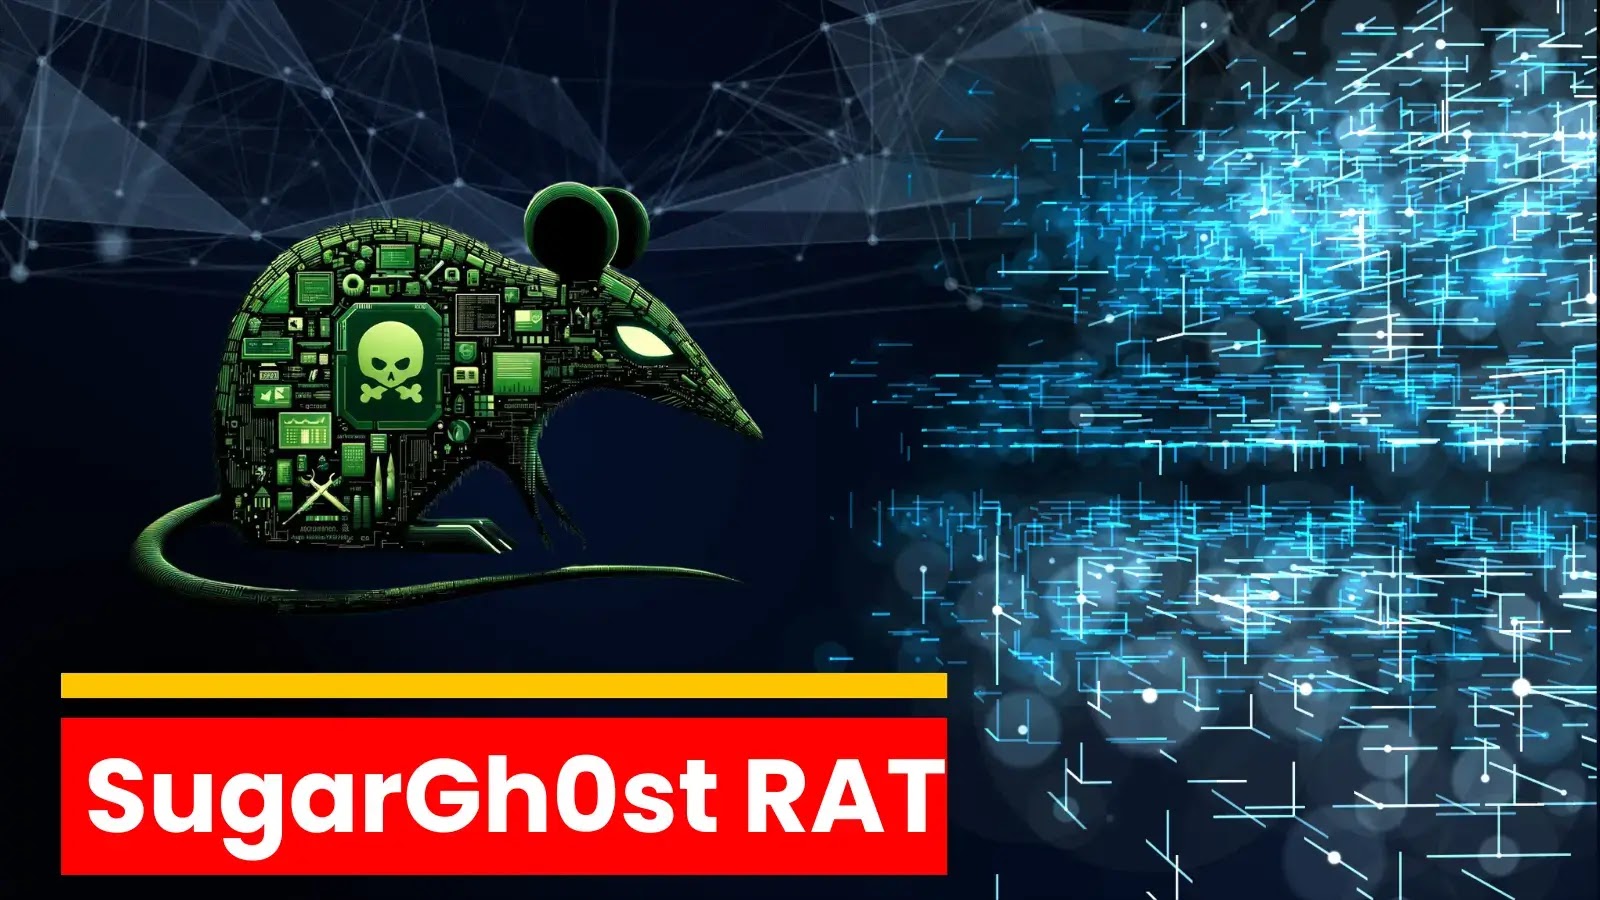 SugarGh0st Yapay Zeka Araştırmalarında RAT'a Saldıran Kuruluşlar ve Bireyler